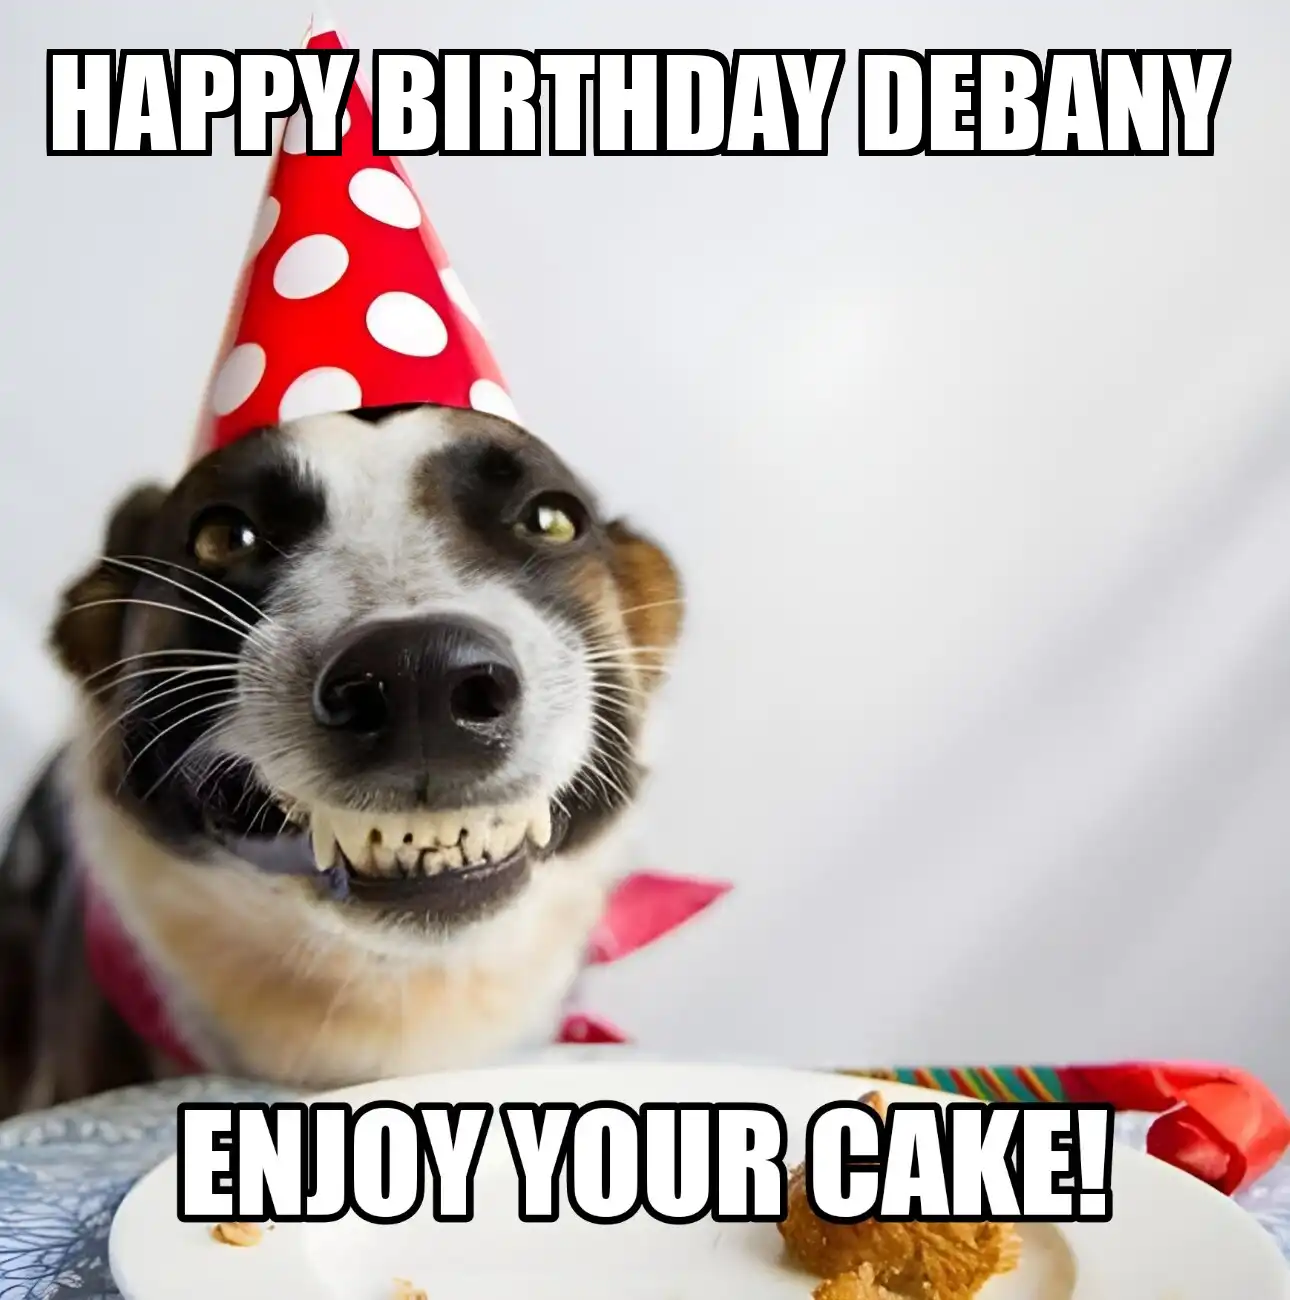 Happy Birthday Debany Enjoy Your Cake Dog Meme